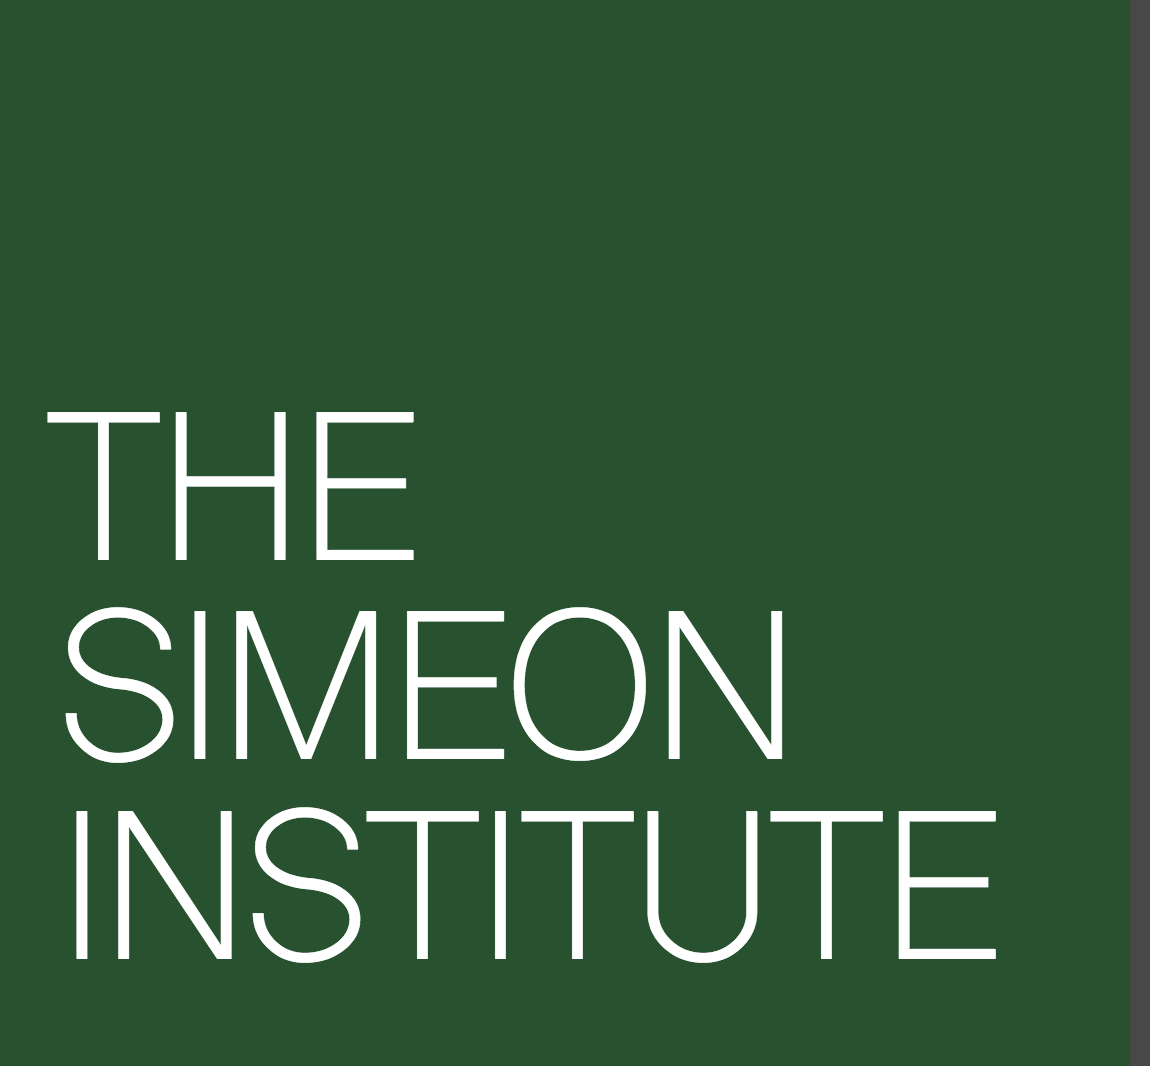 Simeon Institute